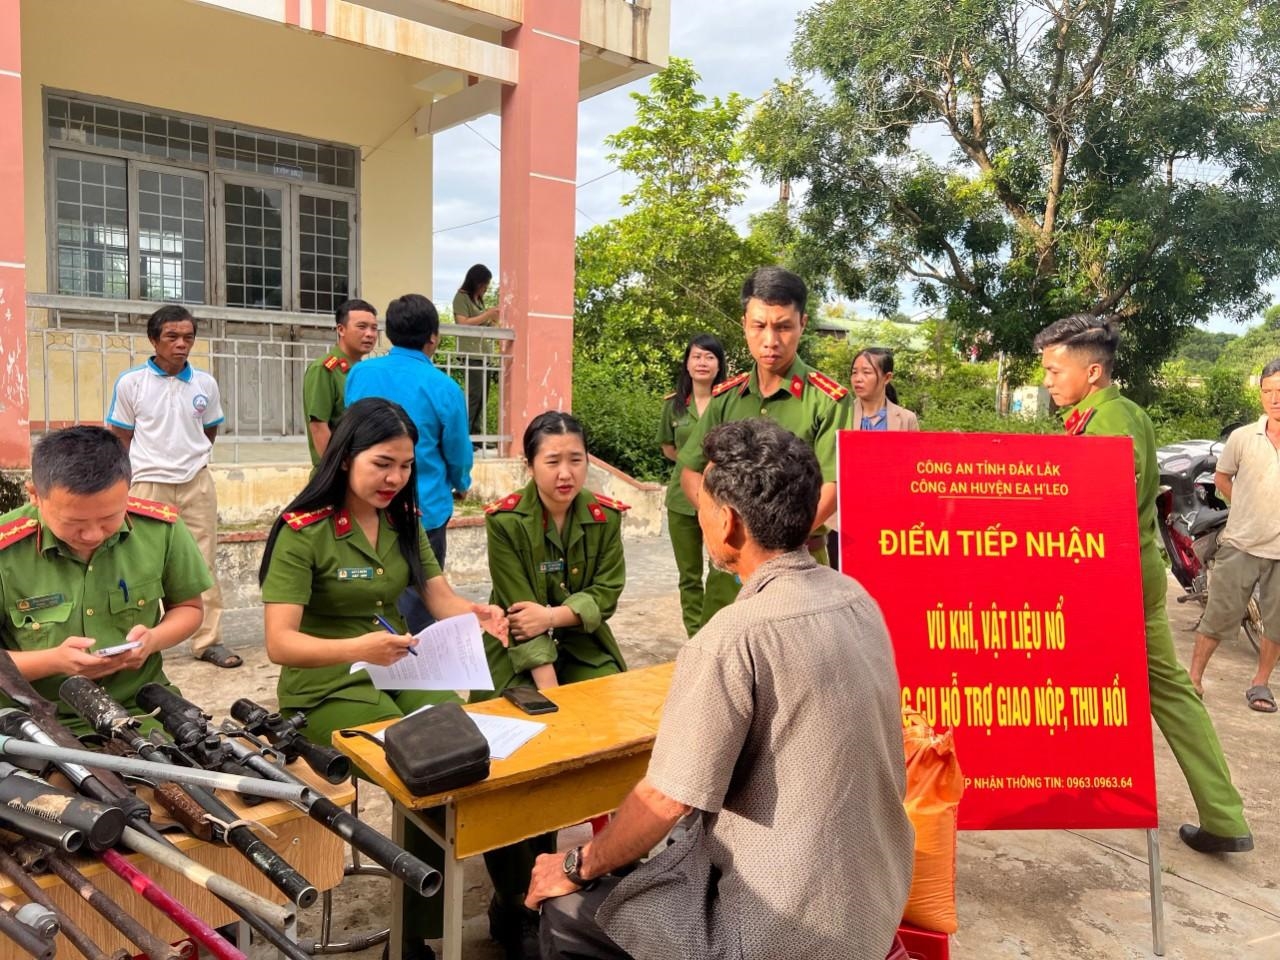 Công an huyện Ea H’leo tổ chức điểm “Đổi gạo lấy vũ khí” tại buôn Cham, xã Ea Sol, huyện Ea H’leo